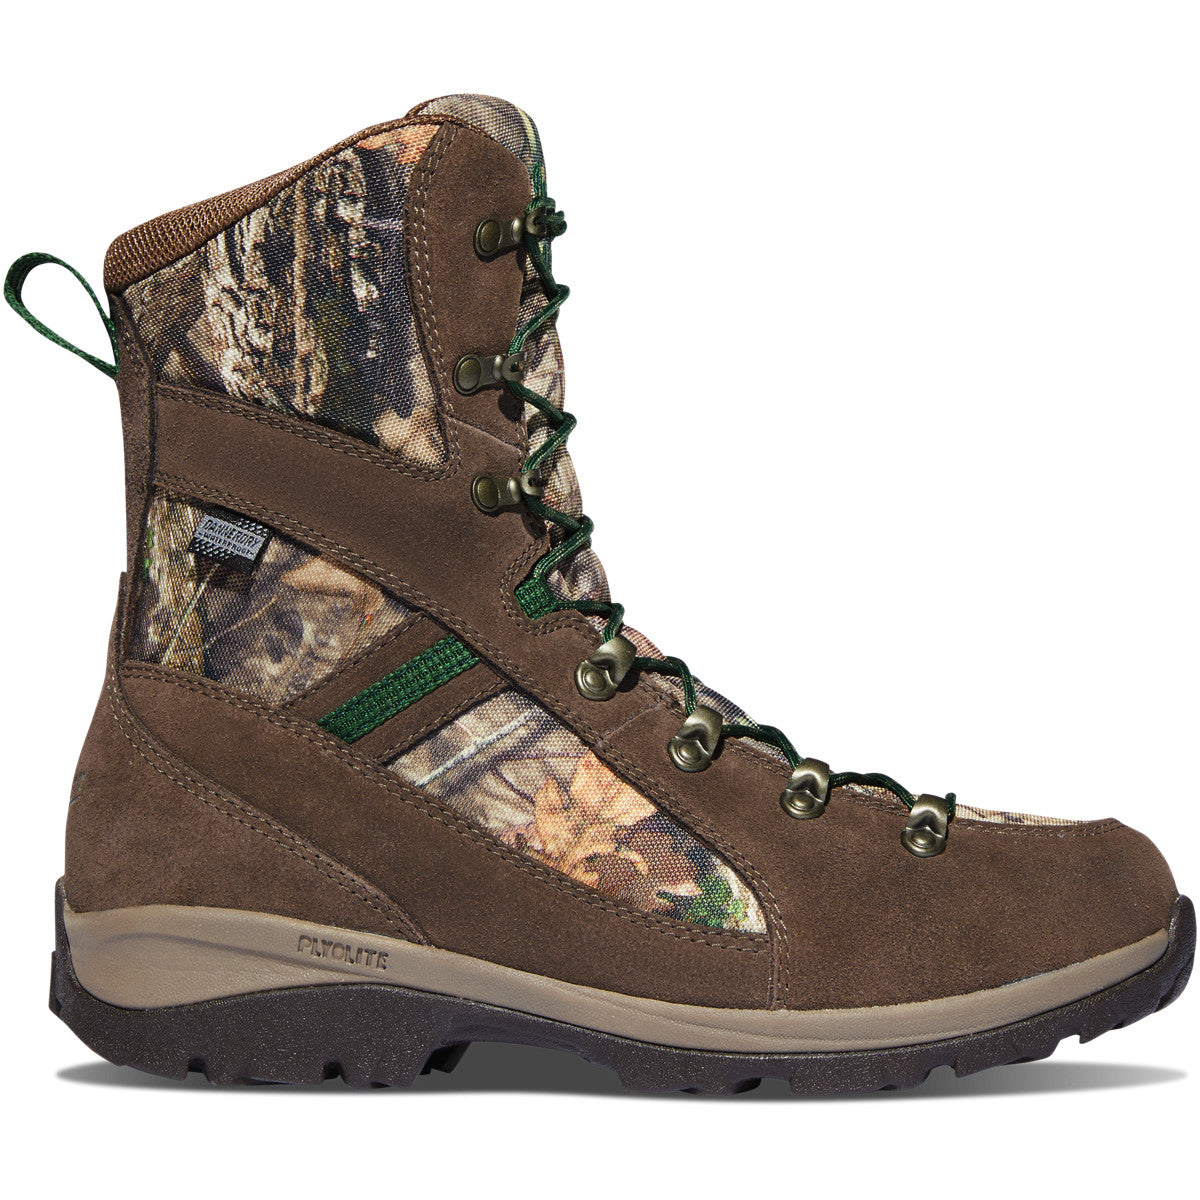 Danner Women's Wayfinder 8" WP Insulated Hunt Boot - Mossy Oak 44211  - Overlook Boots